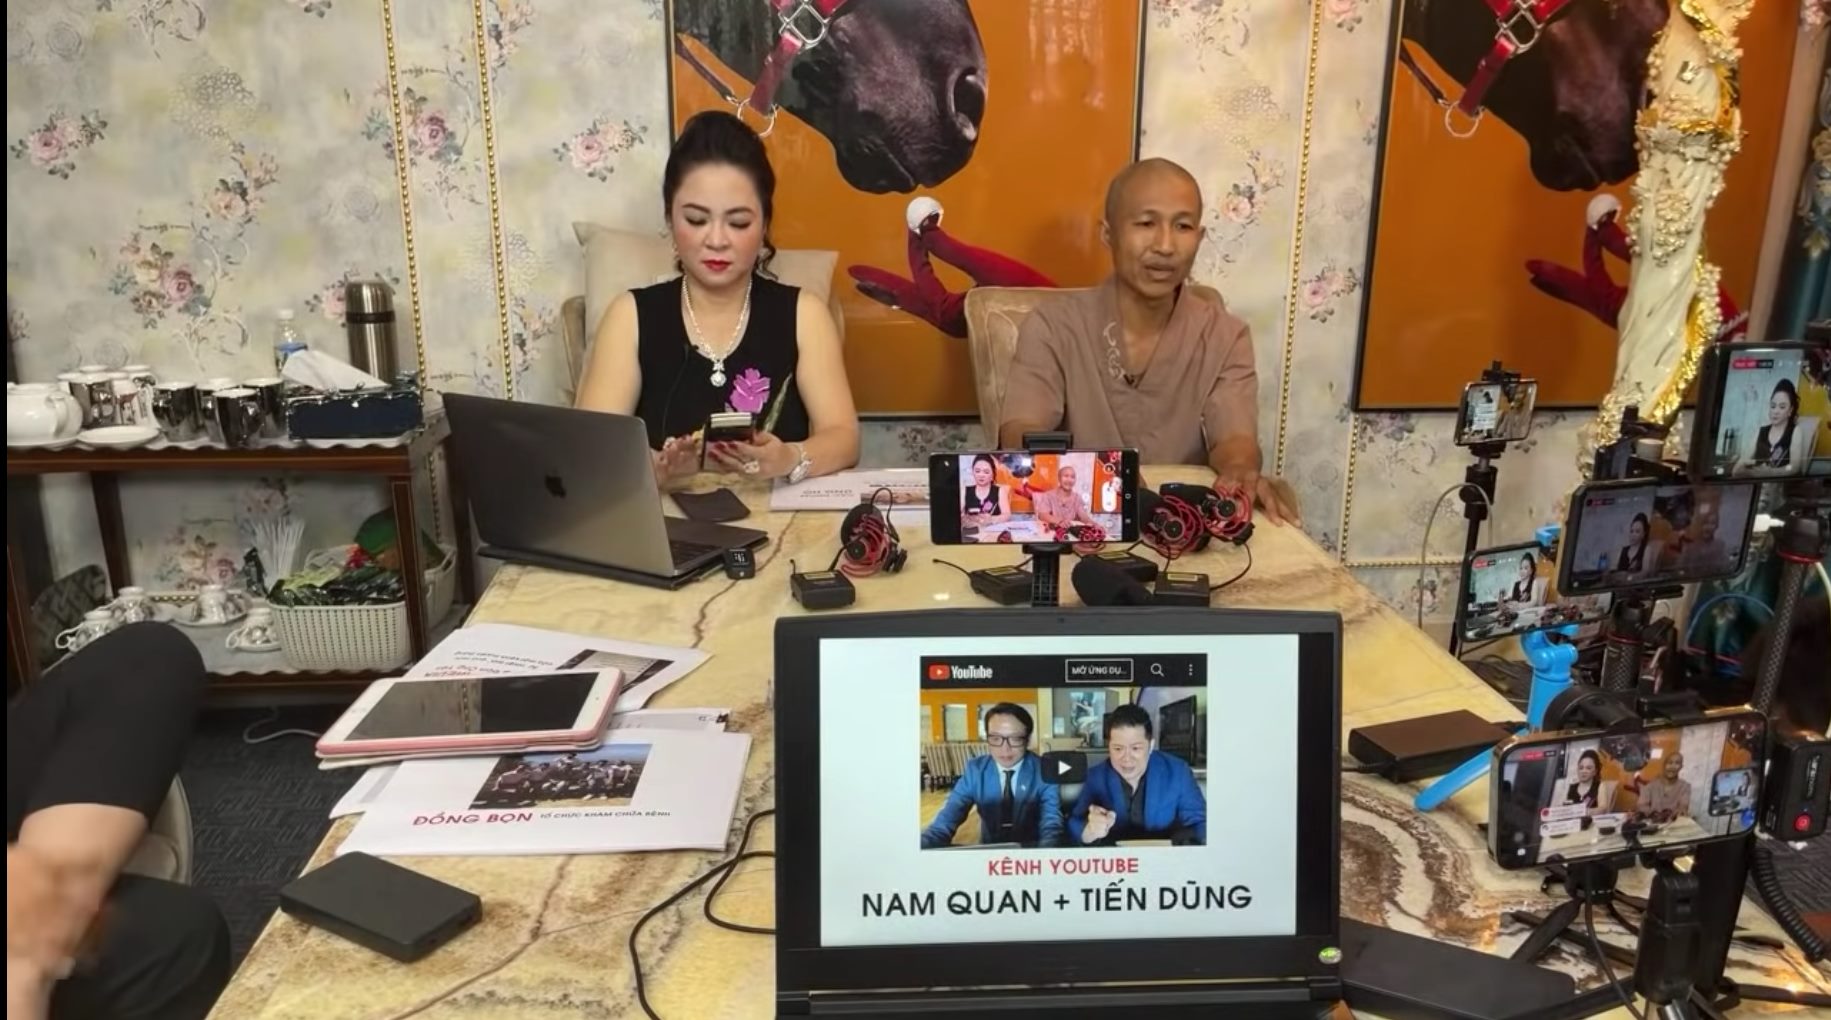 Mở rộng điều tra đồng phạm với bà Nguyễn Phương Hằng trong các buổi livestream - Ảnh 3.